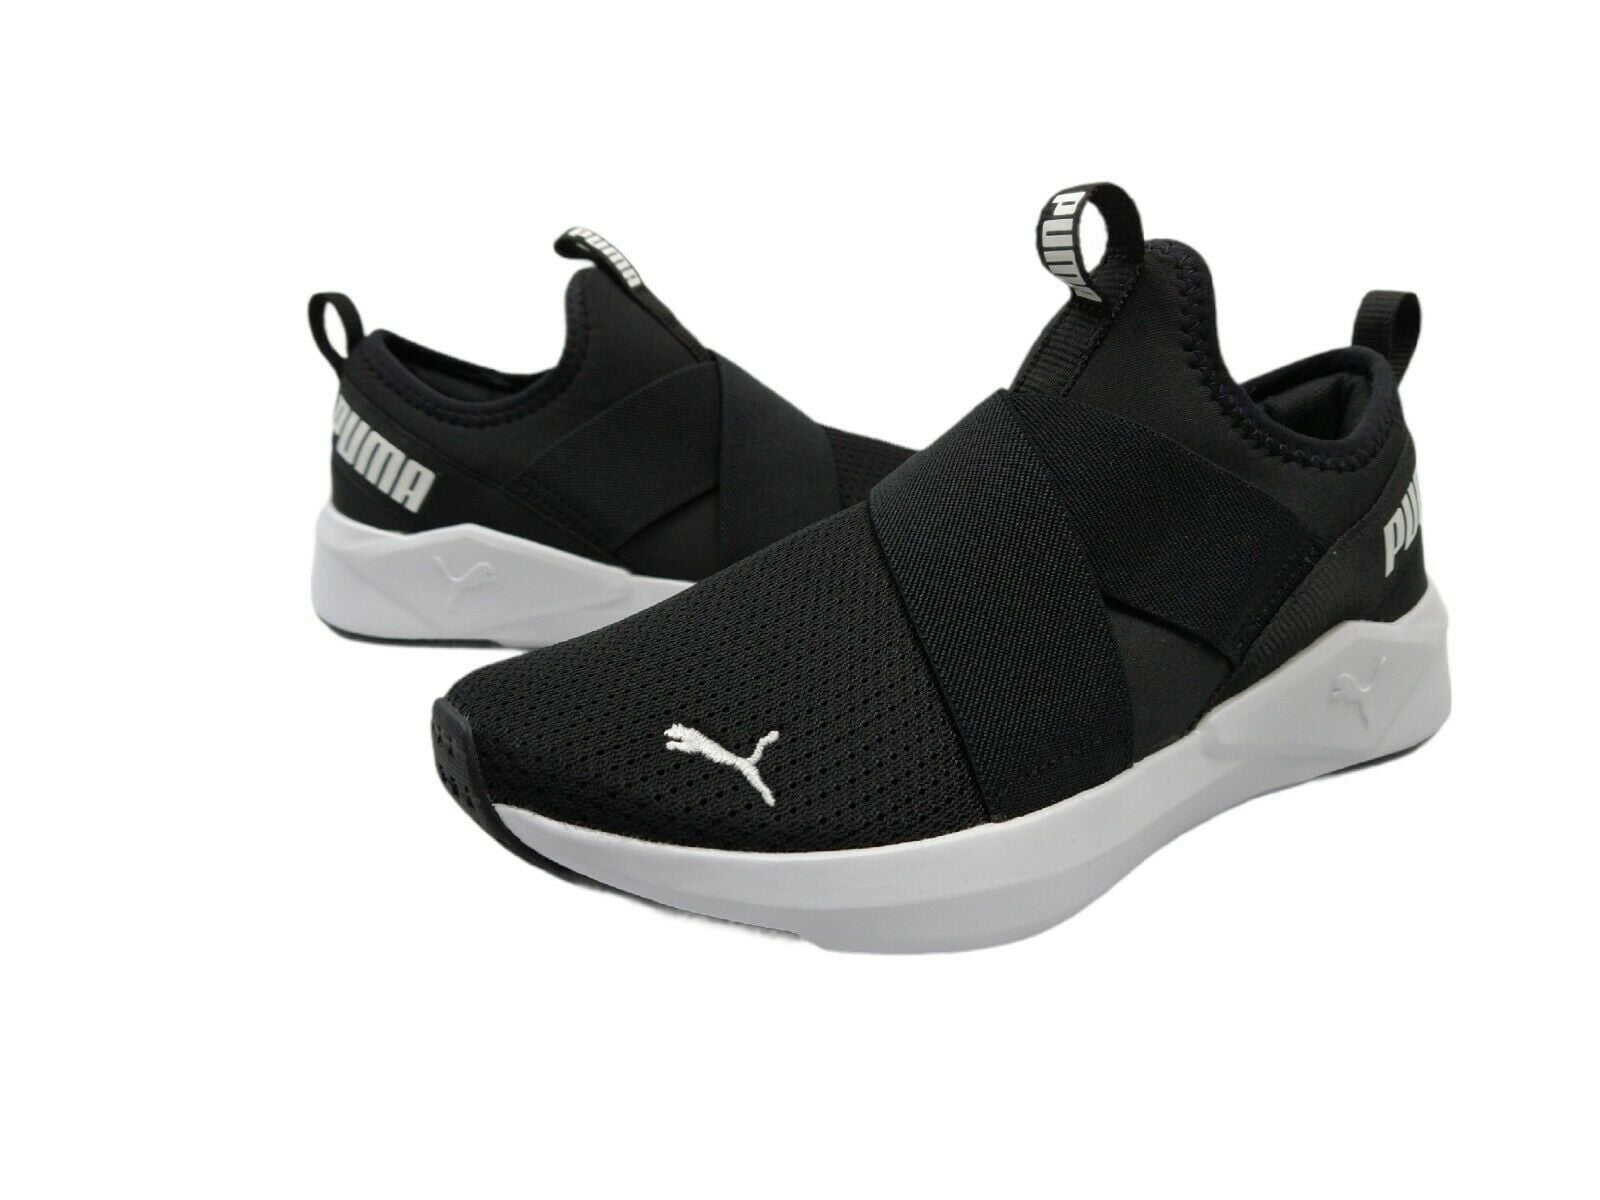 Begunstigde Barry Hoeveelheid geld PUMA Women's Chroma Slip On Sneaker Soft Foam Black White Logo, Size 7 -  Walmart.com